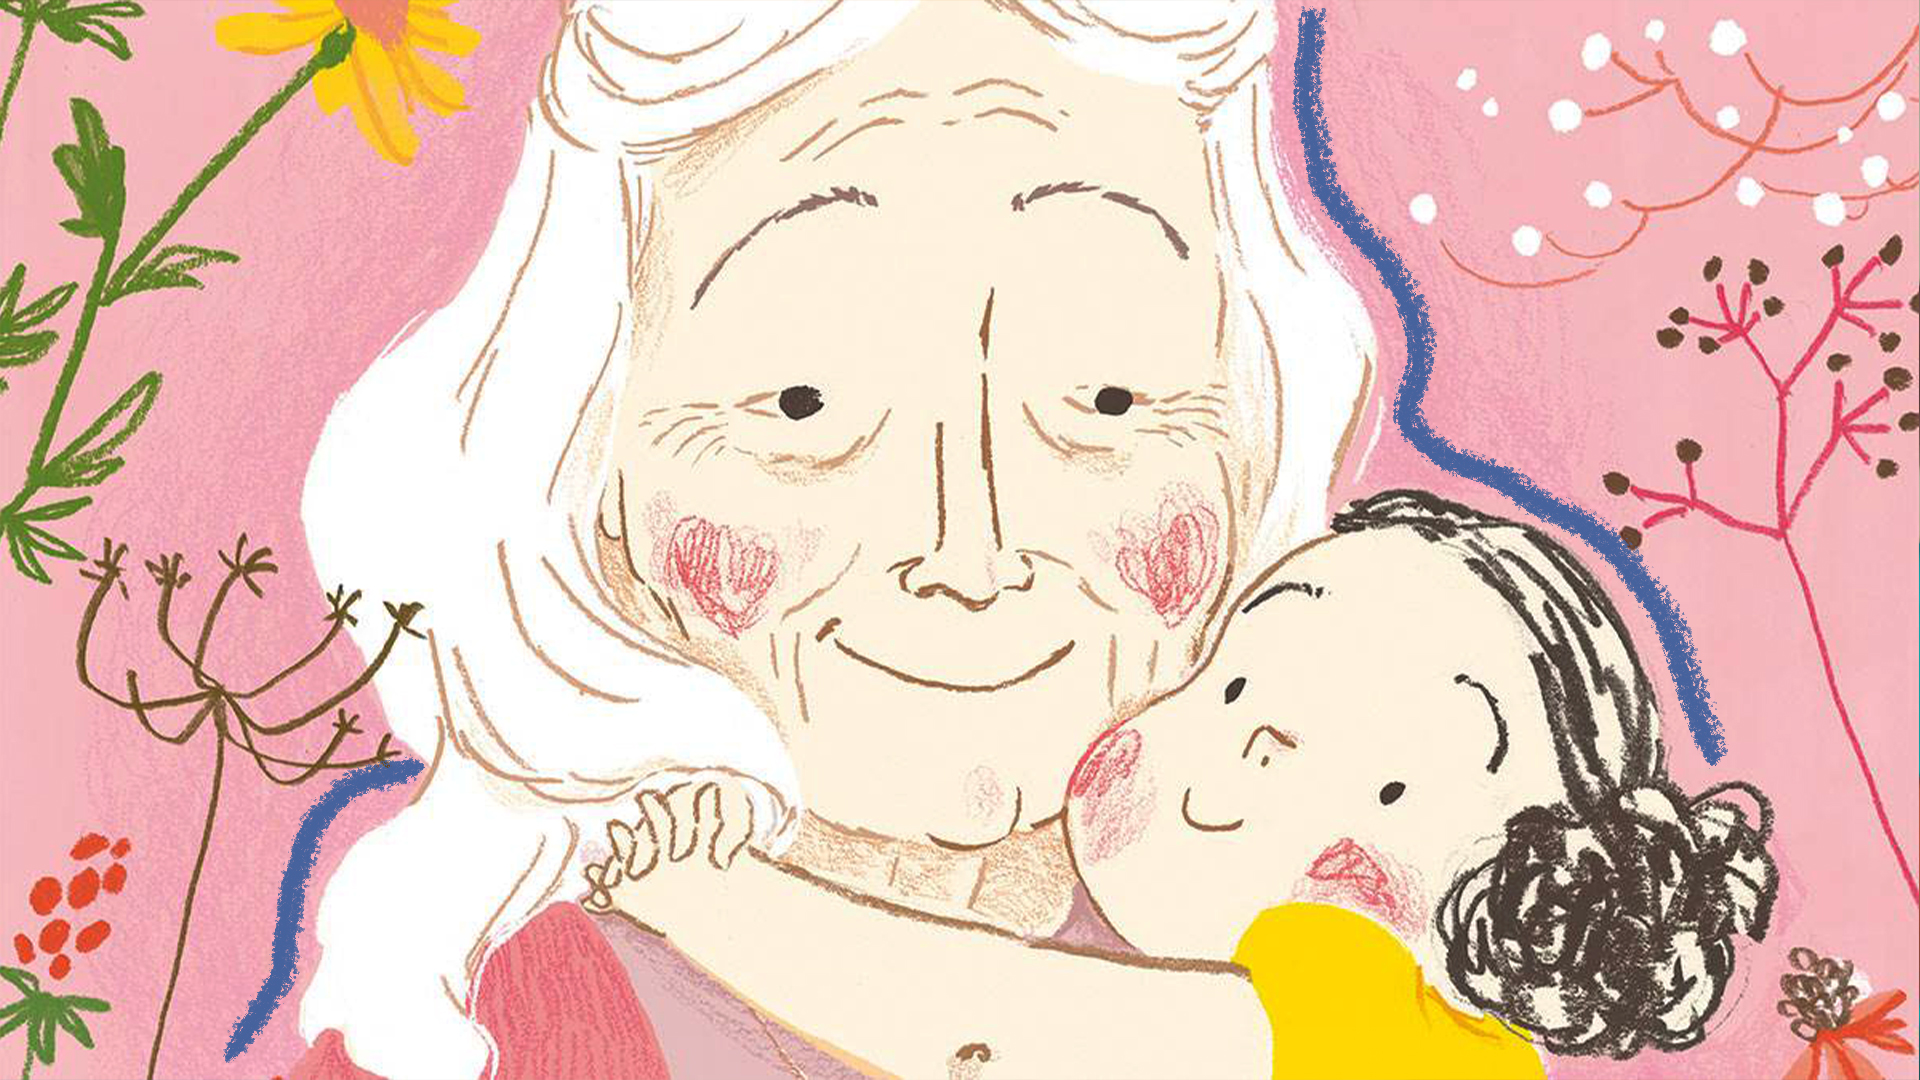 Ilustração do livro “As linhas do rosto da Nana”, de Simona Ciraolo. Uma menina abraça a avó enquanto a olha. Ao redor delas, flores sob um fundo cor de rosa.